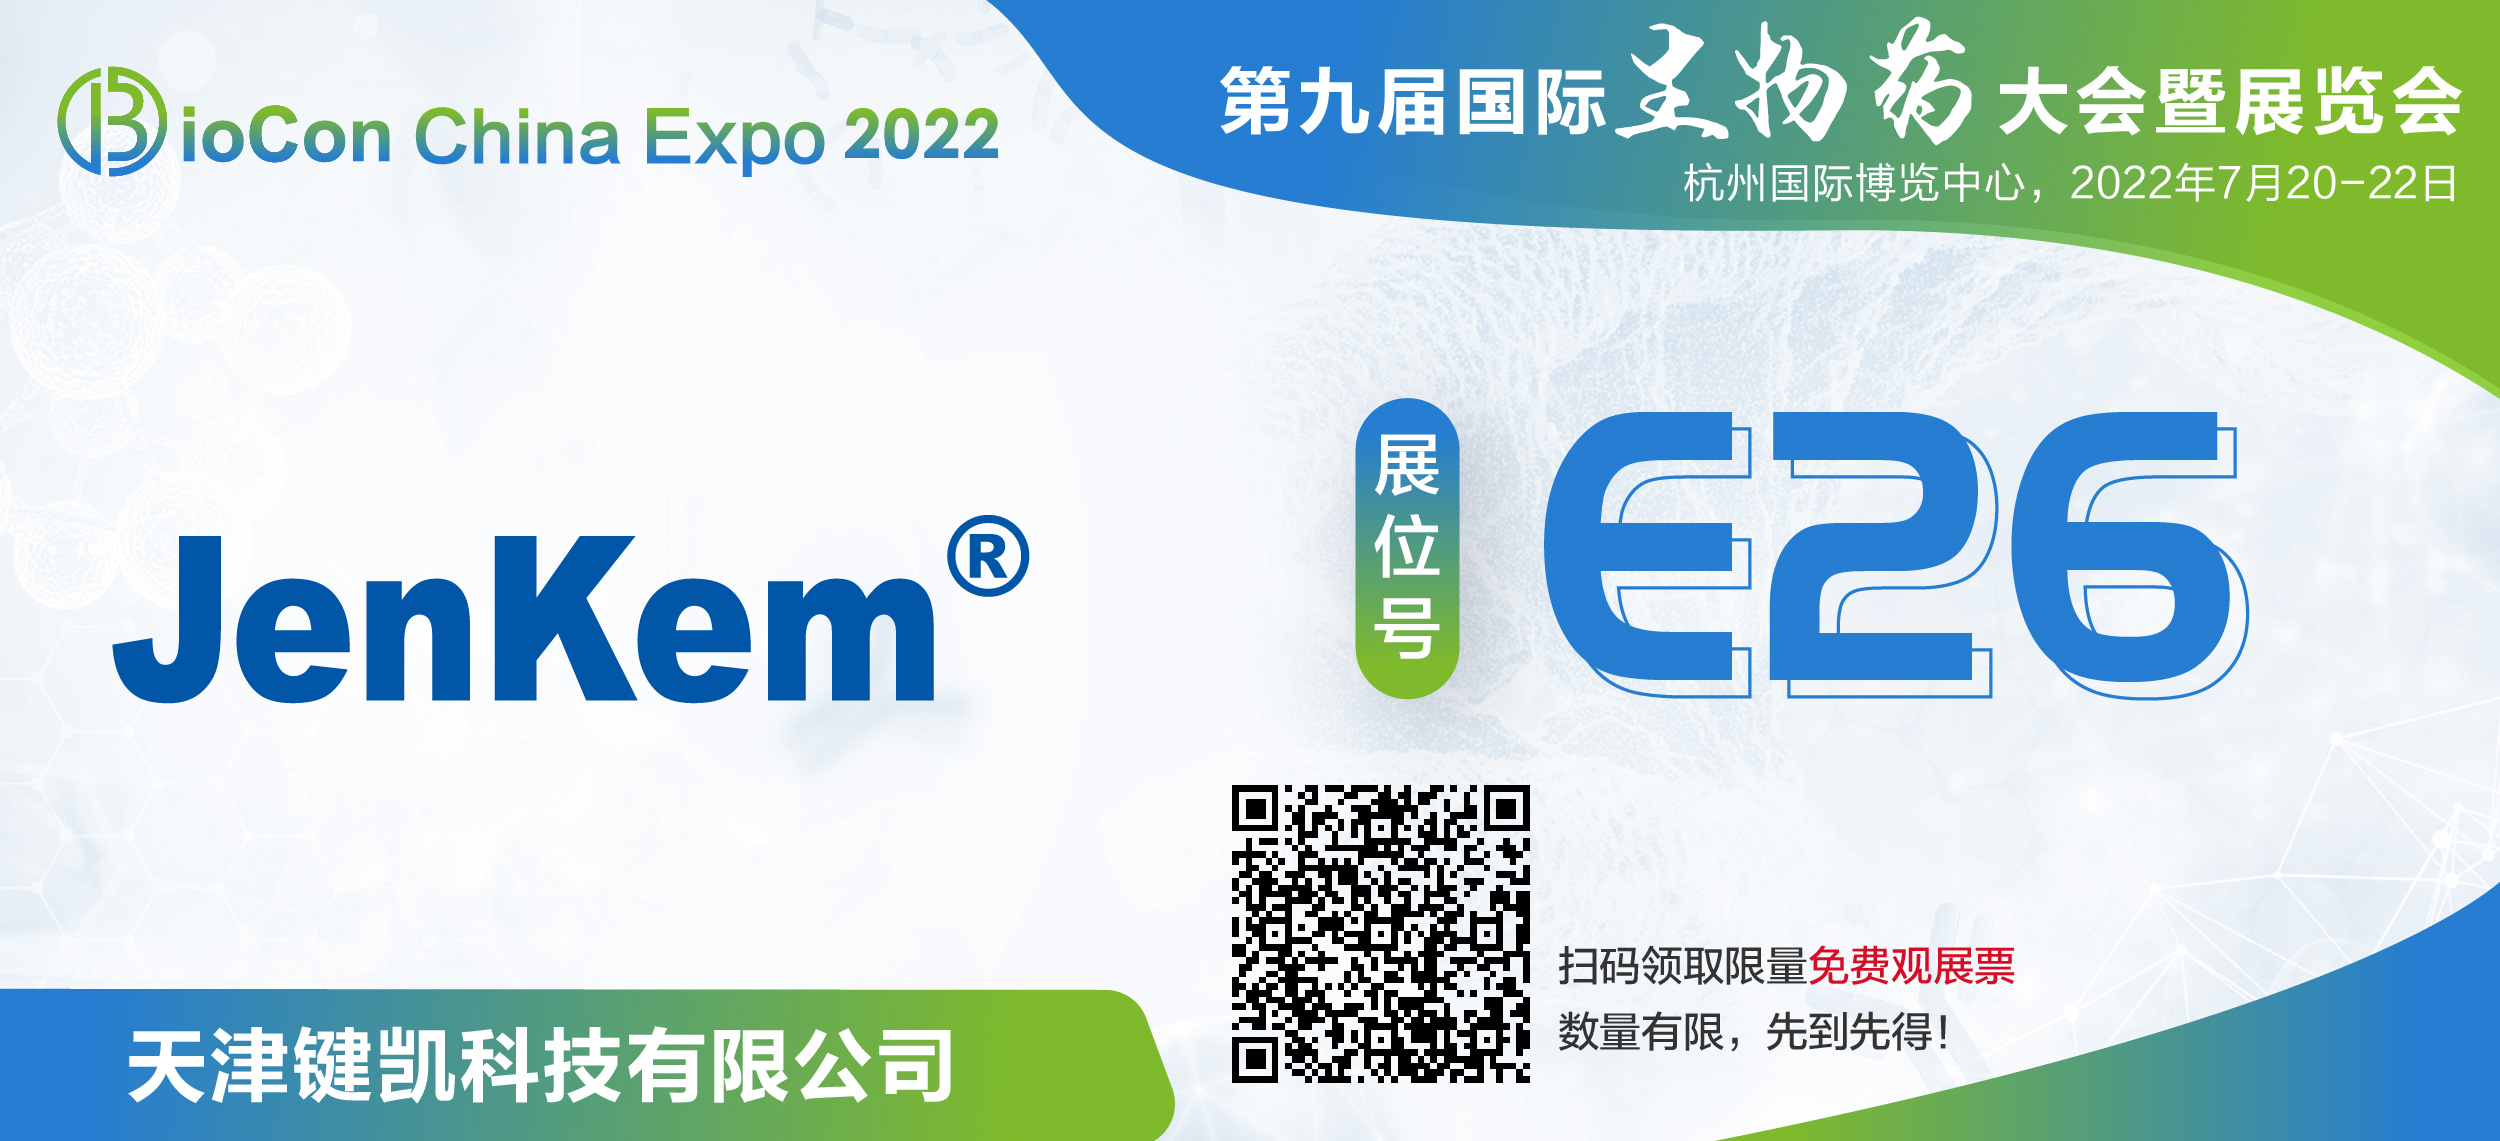 键凯科技邀您参加BioCon Expo 2022 第九届国际生物药大会